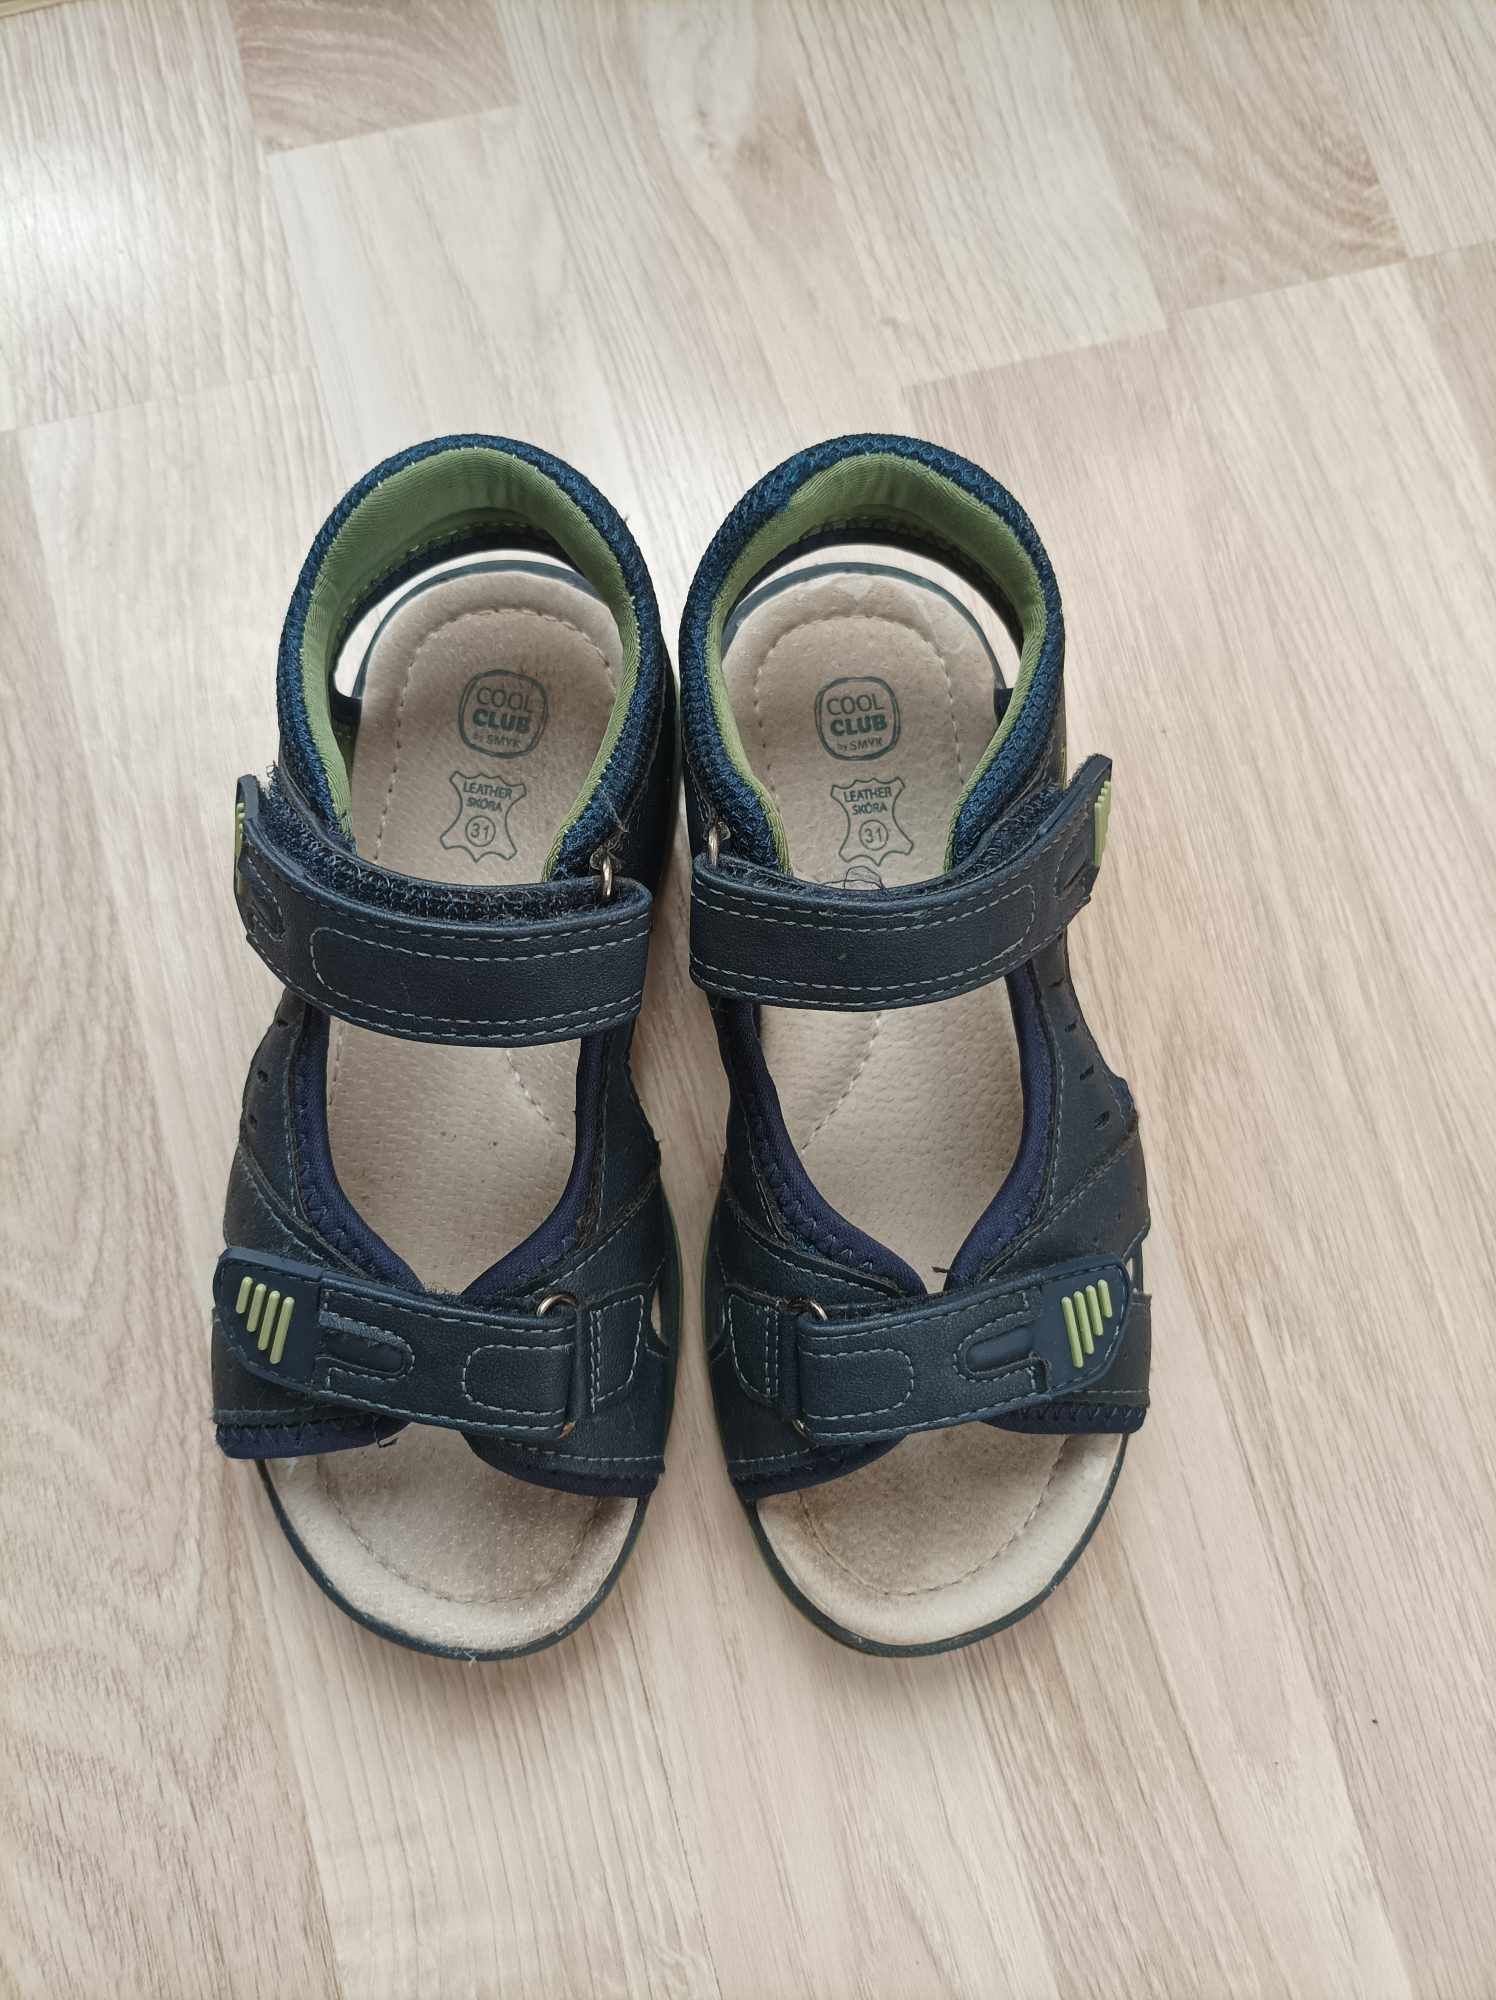 Granatowe zielone sandały sandałki skórzana wkładka Cool Club Smyk 31